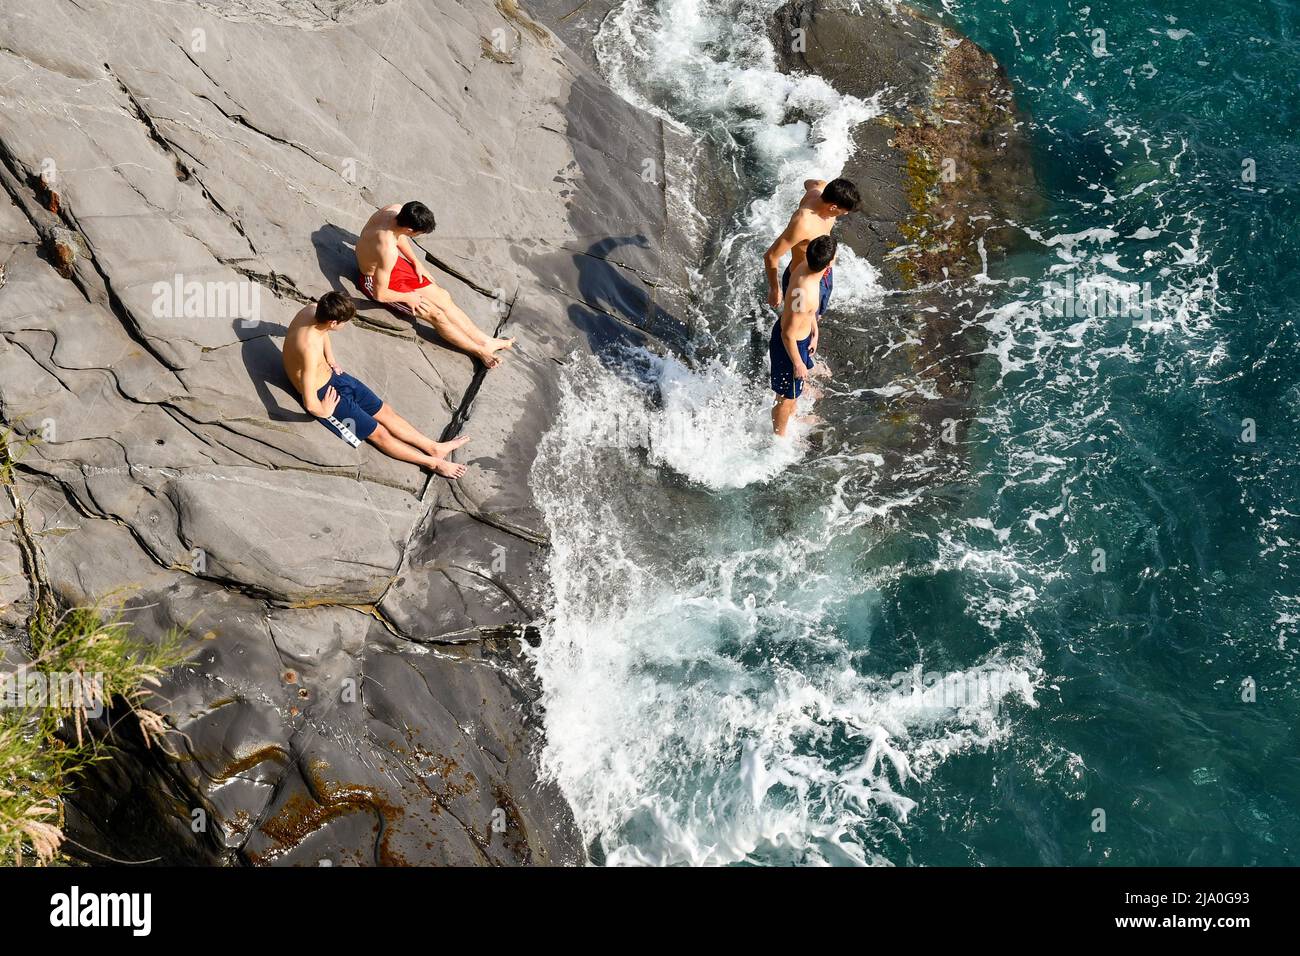 Vue surélevée d'une falaise de la promenade Nervi avec un petit groupe d'adolescents (environ 16-17 ans) bains de soleil sur la rive, Gênes, Ligurie, Italie Banque D'Images